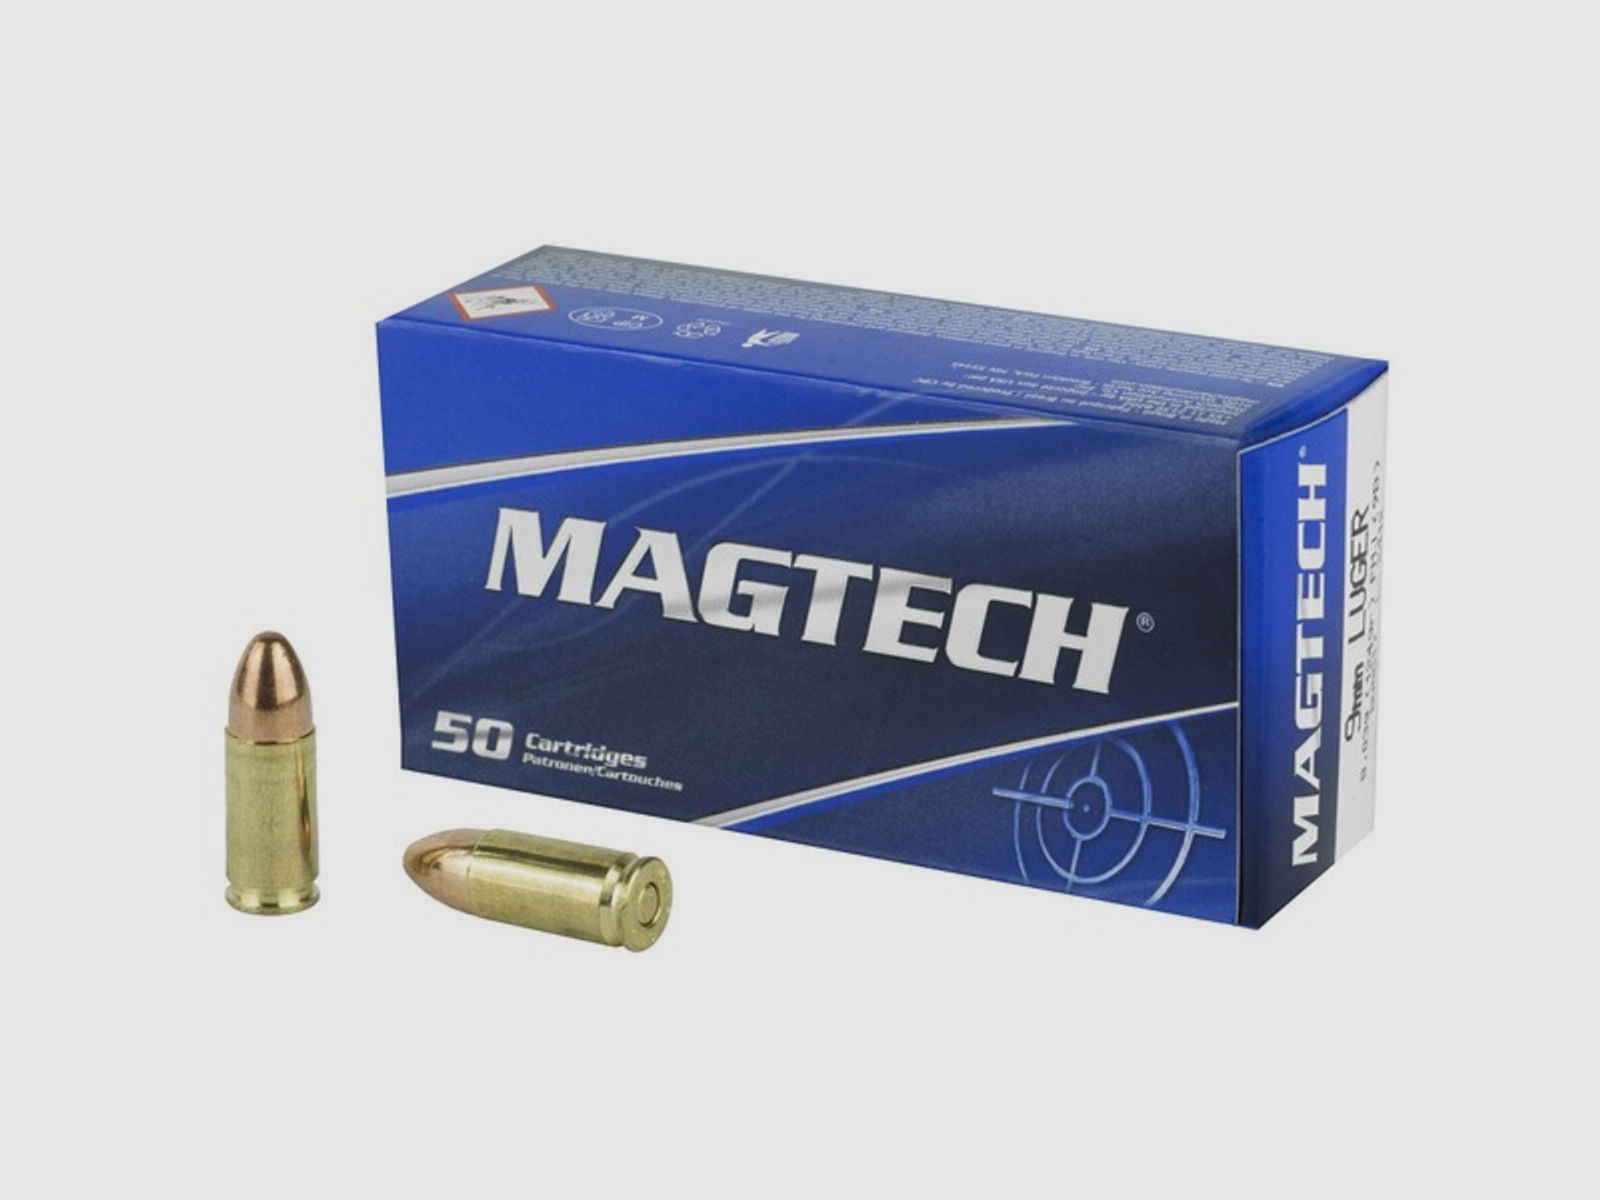 MAGTECH - 9 mm Luger - Vollmantel 8,0g / 124grs. - 500 Stück - NEU in OVP